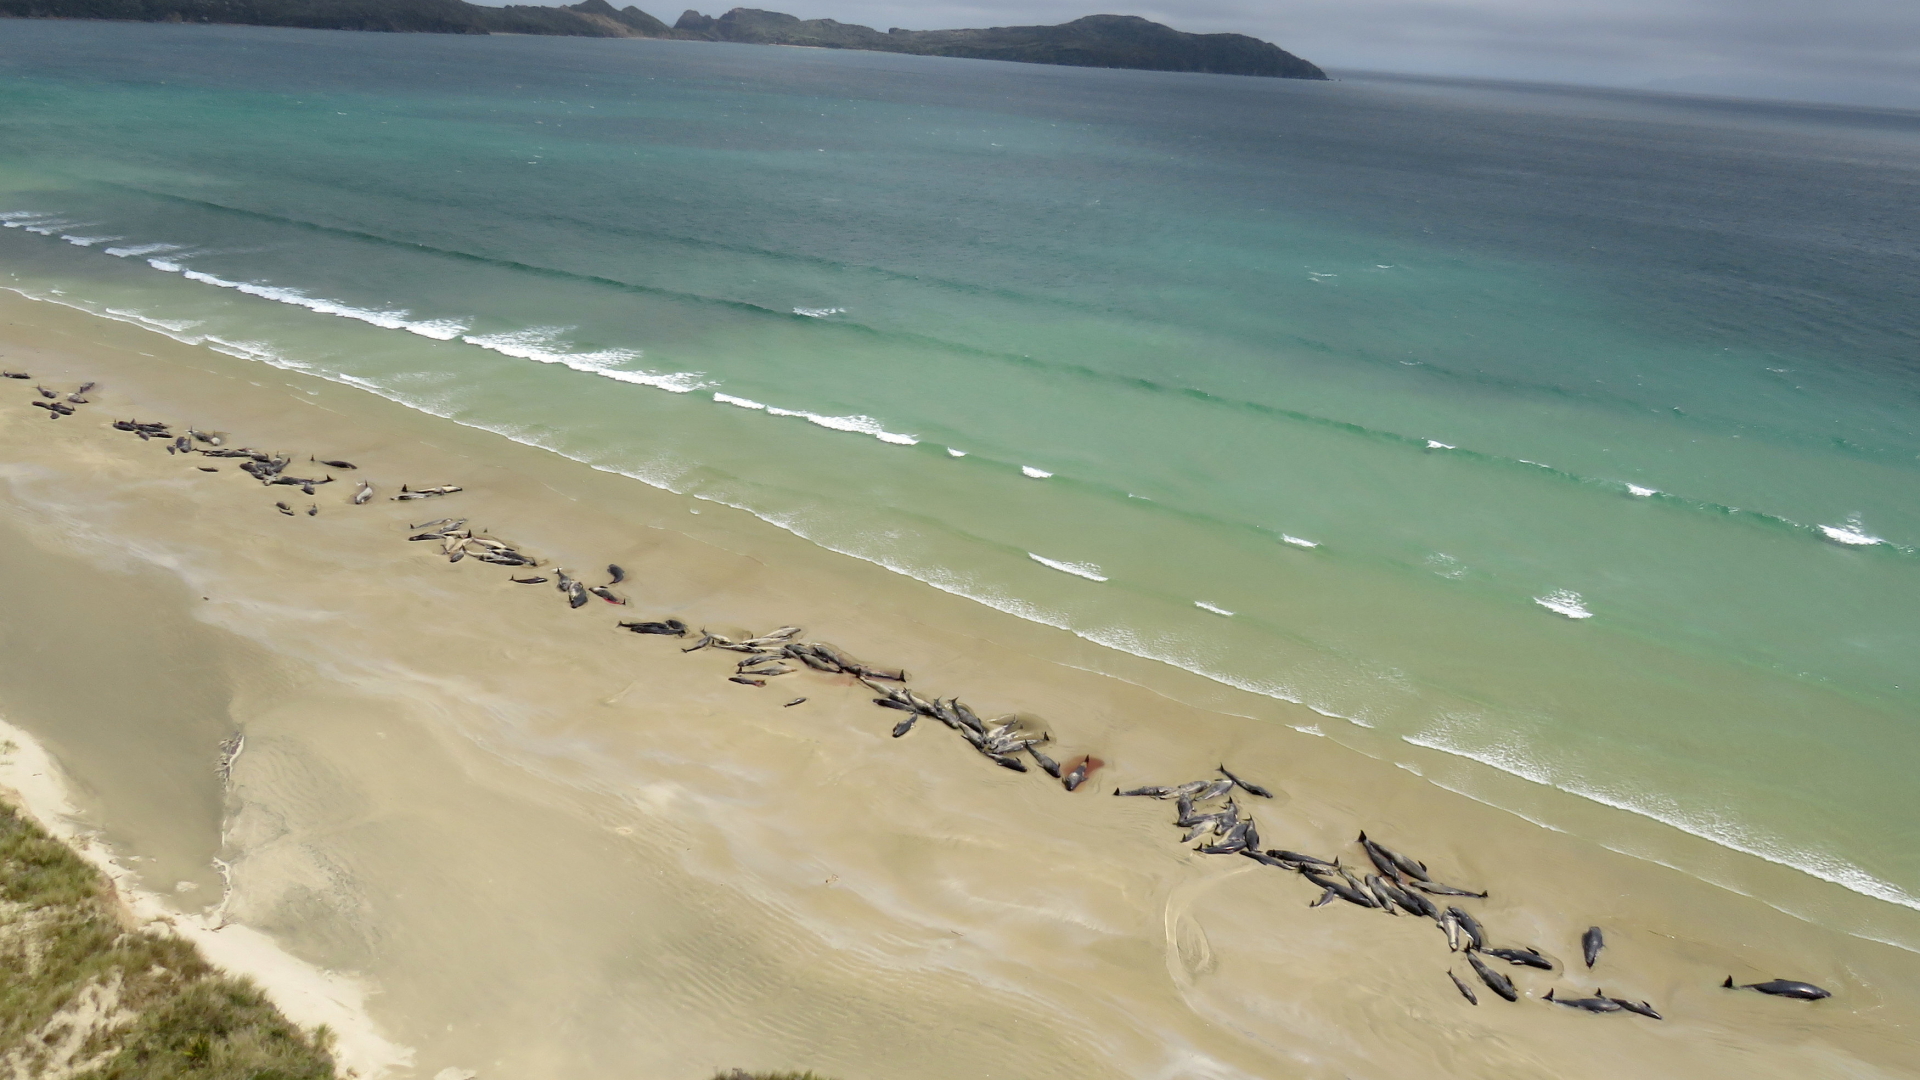 Gestandete Grindwale an einem neuseeländischen Strand | Bildquelle: REUTERS